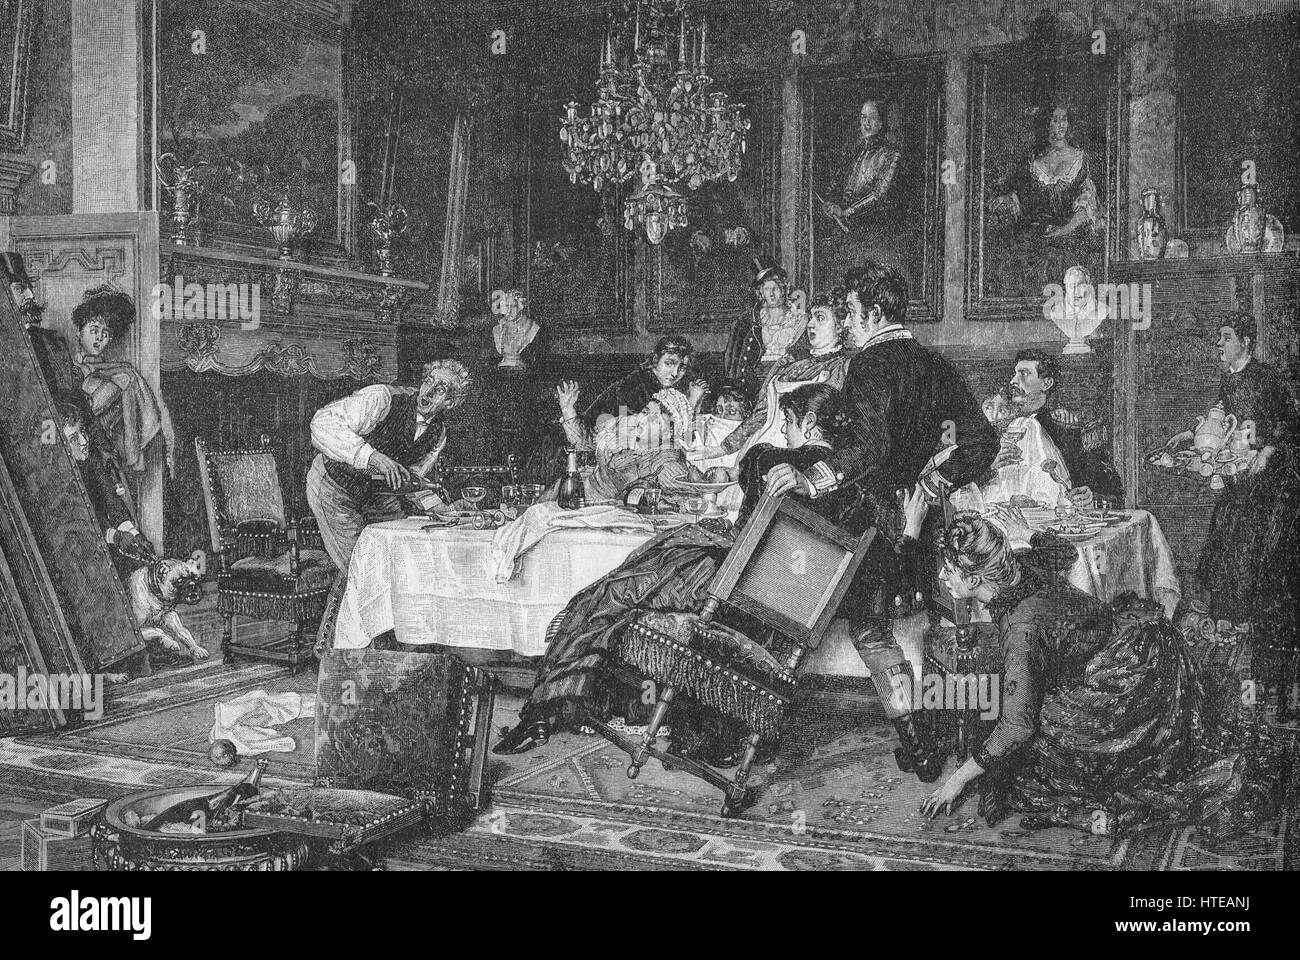 Fonctionnaires pris aident eux-mêmes lorsque le maître et la famille retour début 1892 illustration Banque D'Images